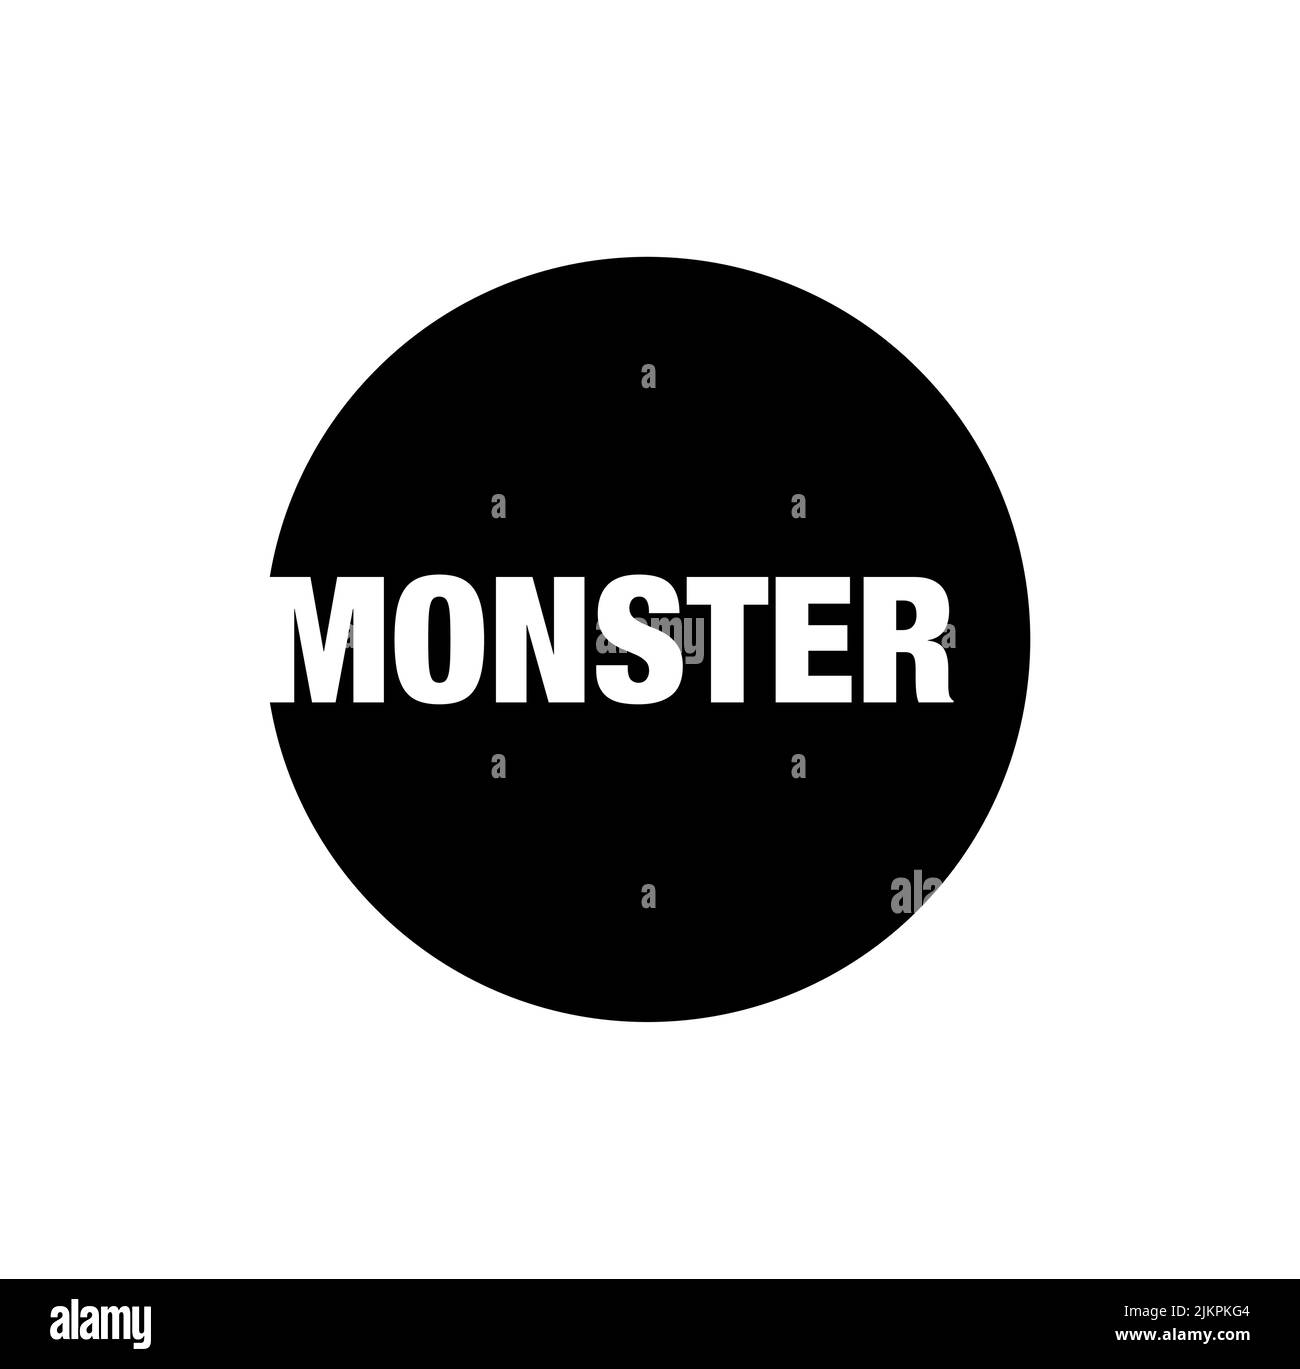 Ein Unternehmen oder ein Markenlogo des Wortes Monster auf einem schwarzen Kreis Stock Vektor